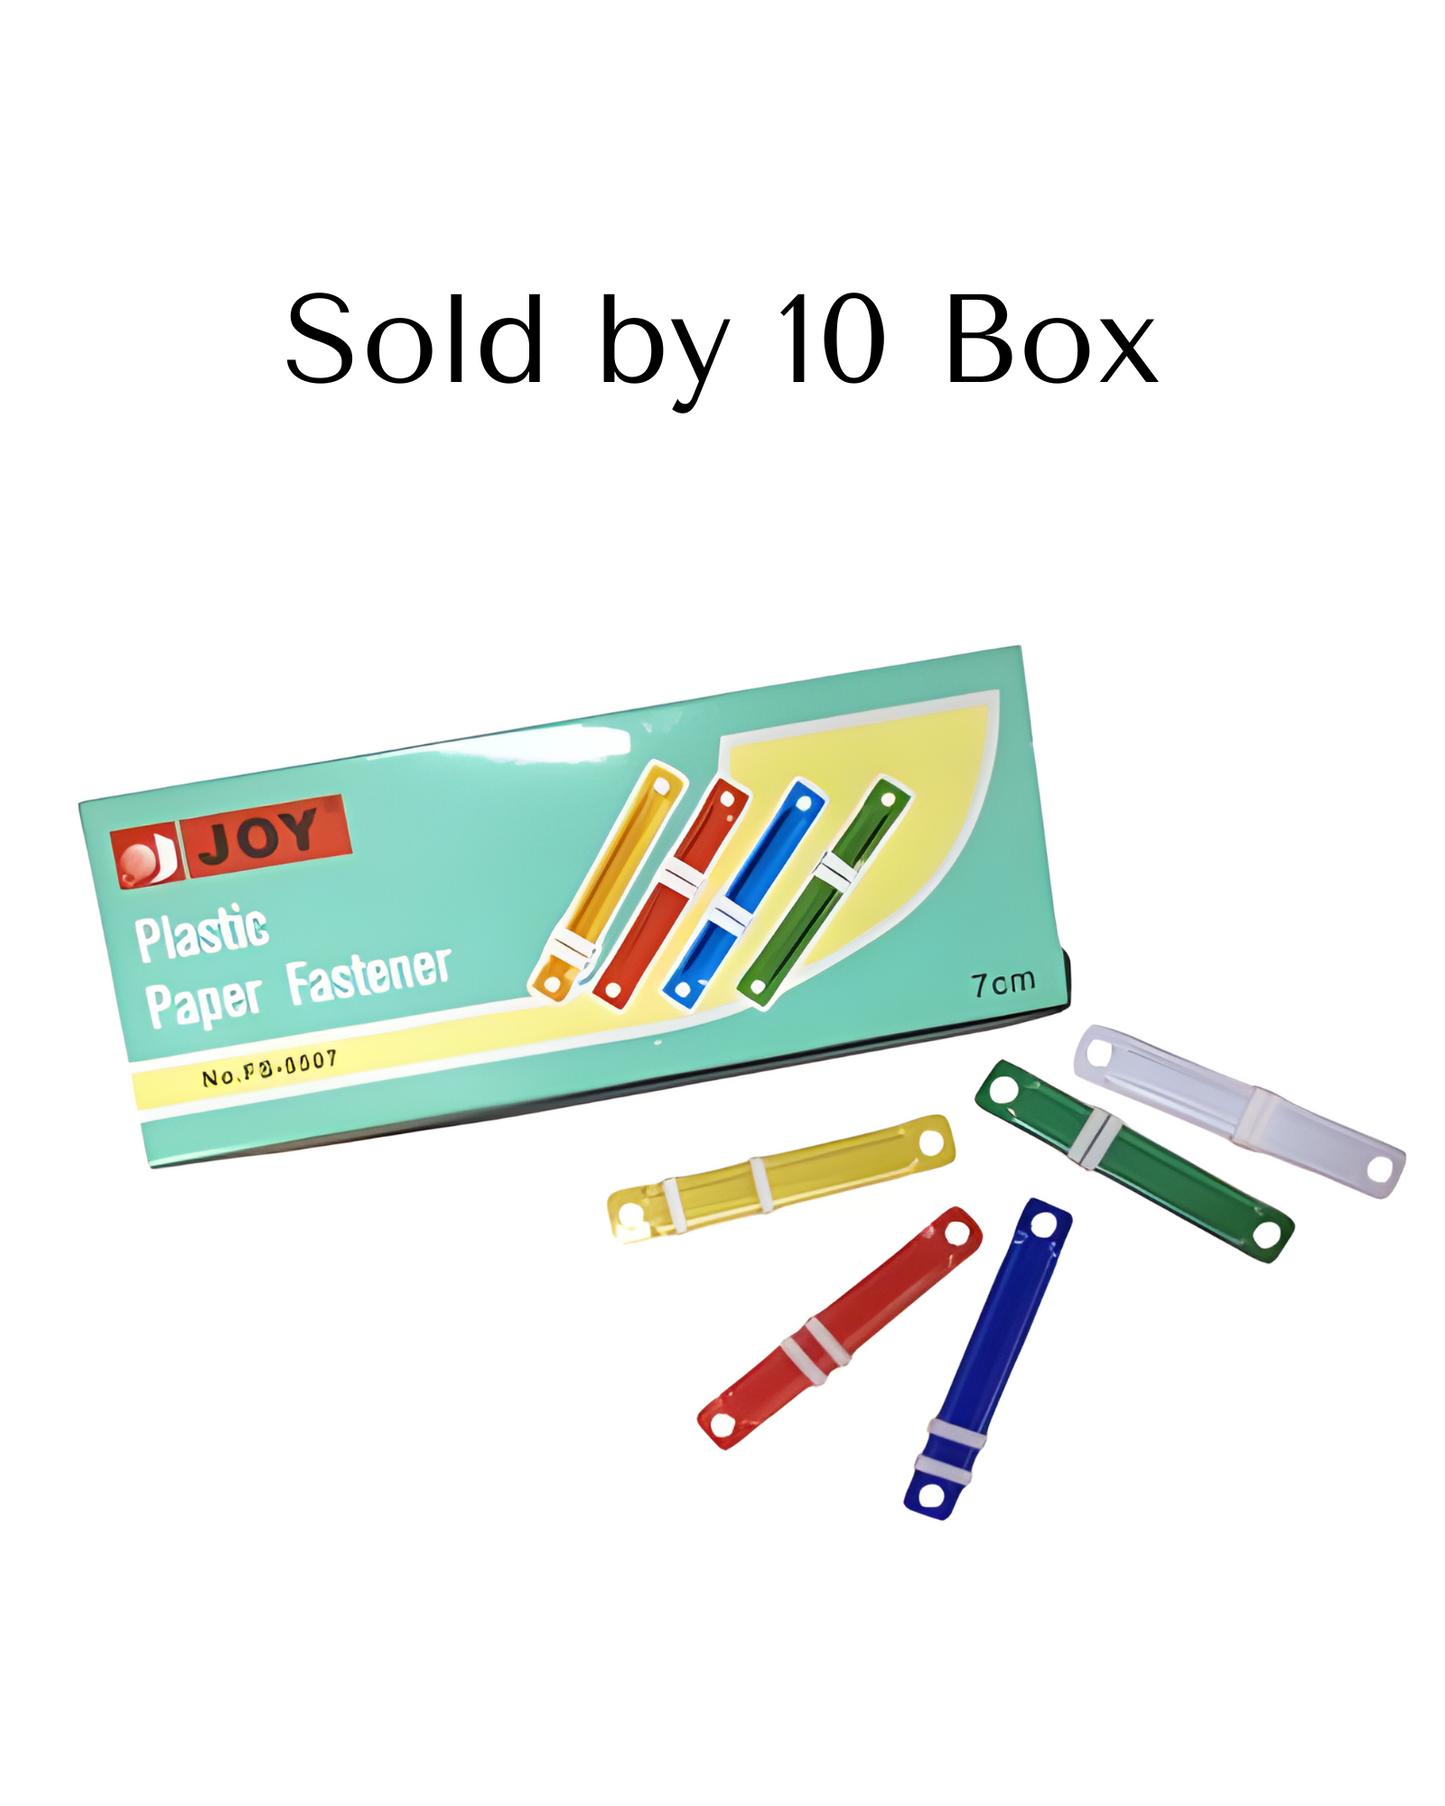 Joy Paper Fastener Plastic 7cm | 10Box